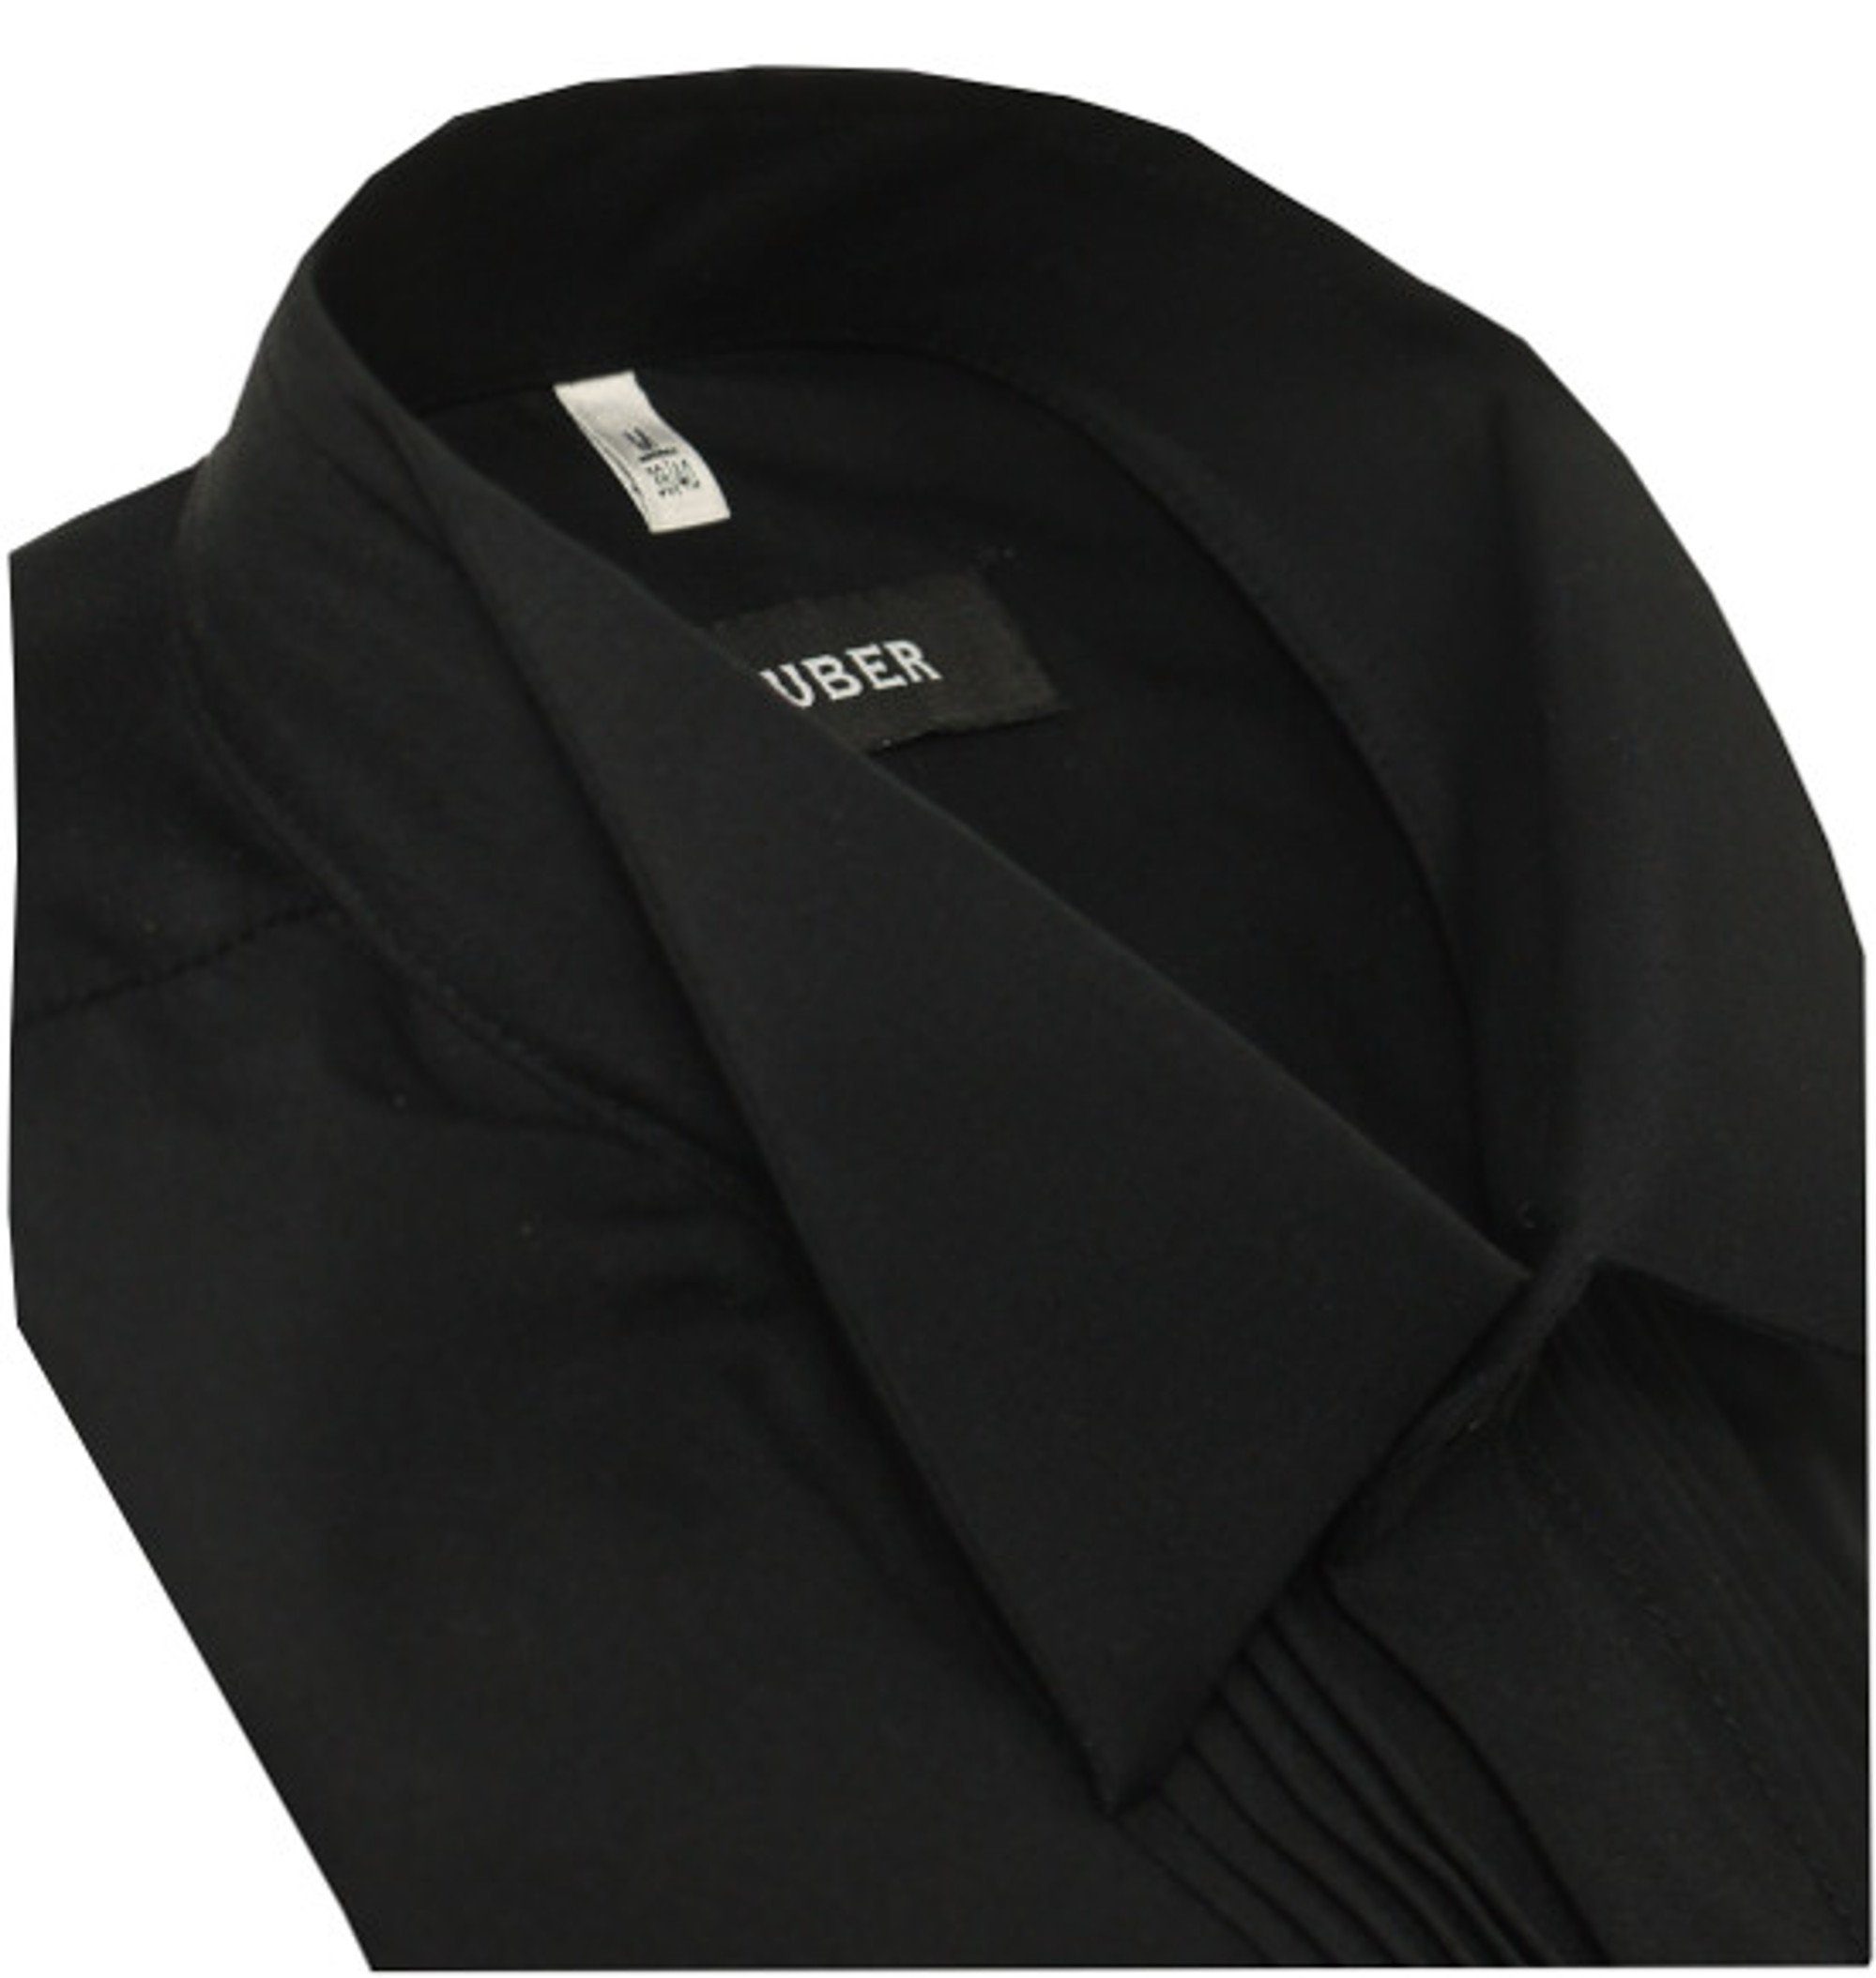 Fit Huber Regular Umschlag-Manschette, Smokinghemd Plissee, Hemden Kläppchen-Kragen, schwarz HU-0171